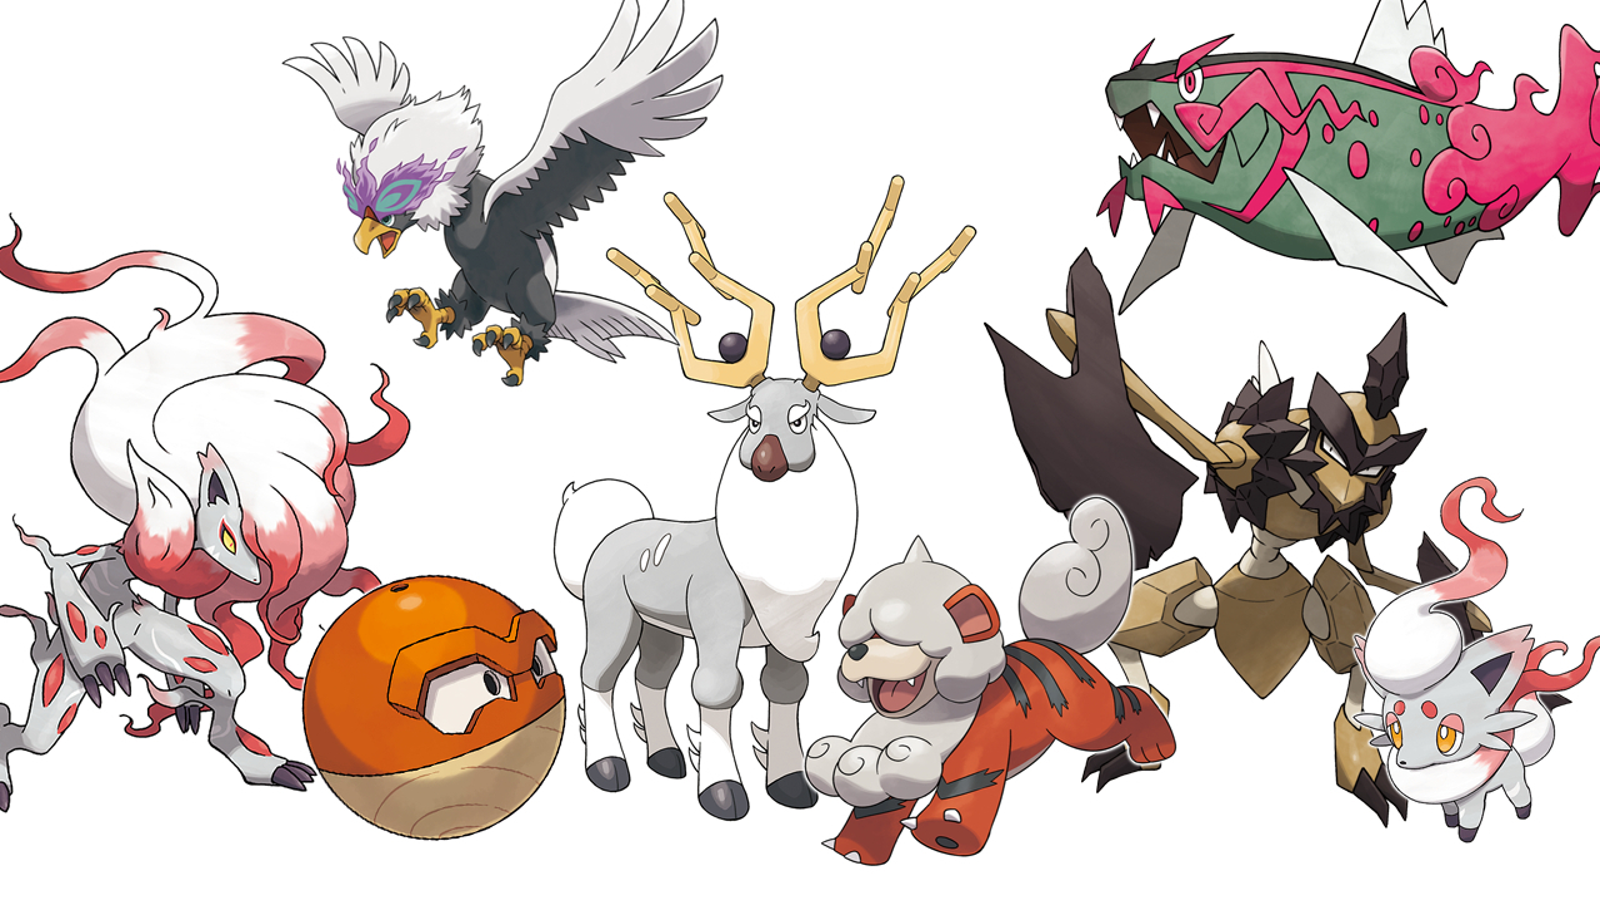 Novos Pokémon de Pokémon Legends: Arceus